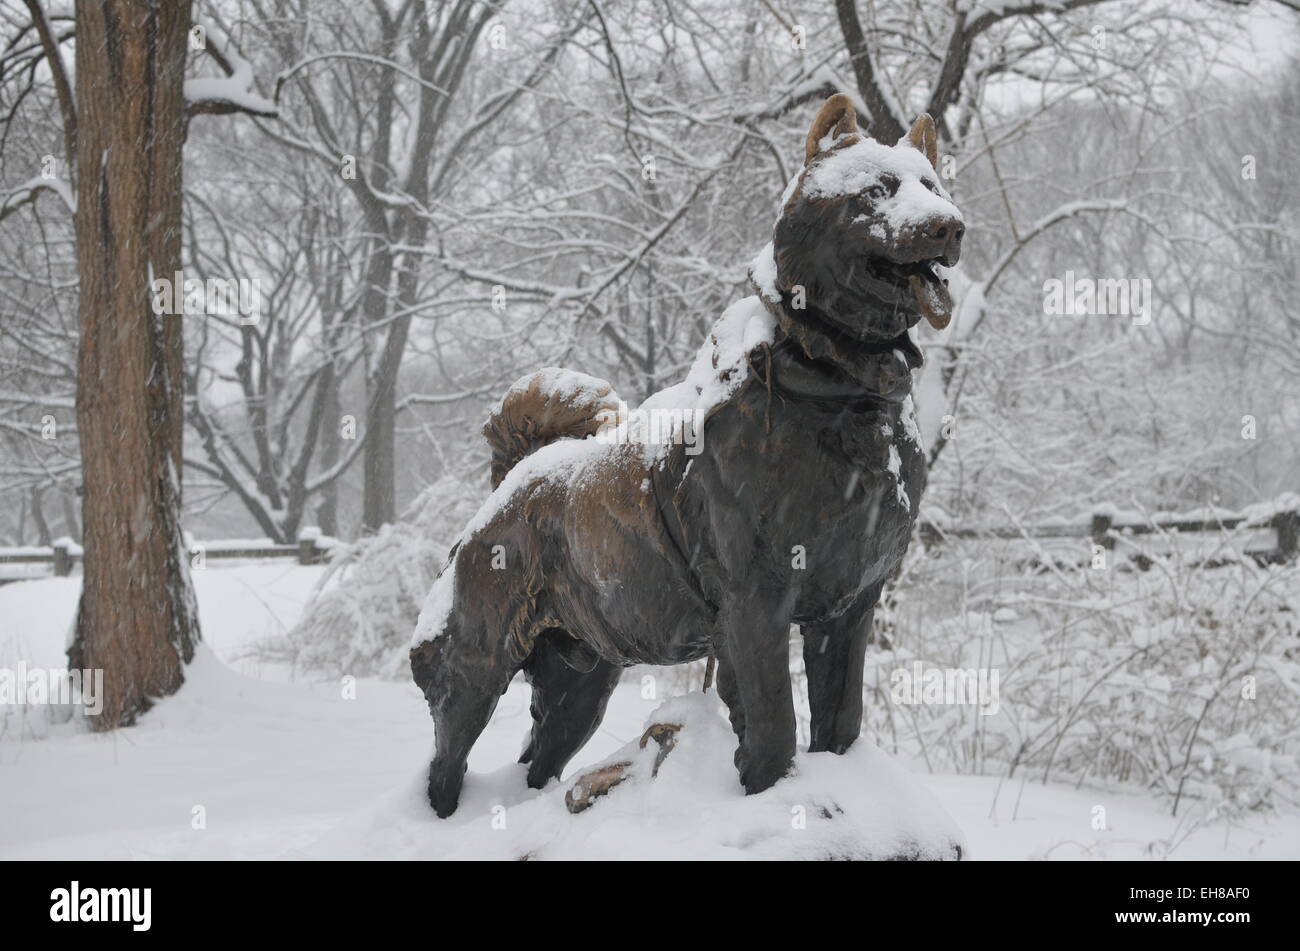 Nueva York, Estados Unidos. 5 Mar, 2015. La estatua de bronce del perro  Balto se exhibe en cubiertas de nieve en el Central Park de Nueva York,  EEUU, 5 de marzo de